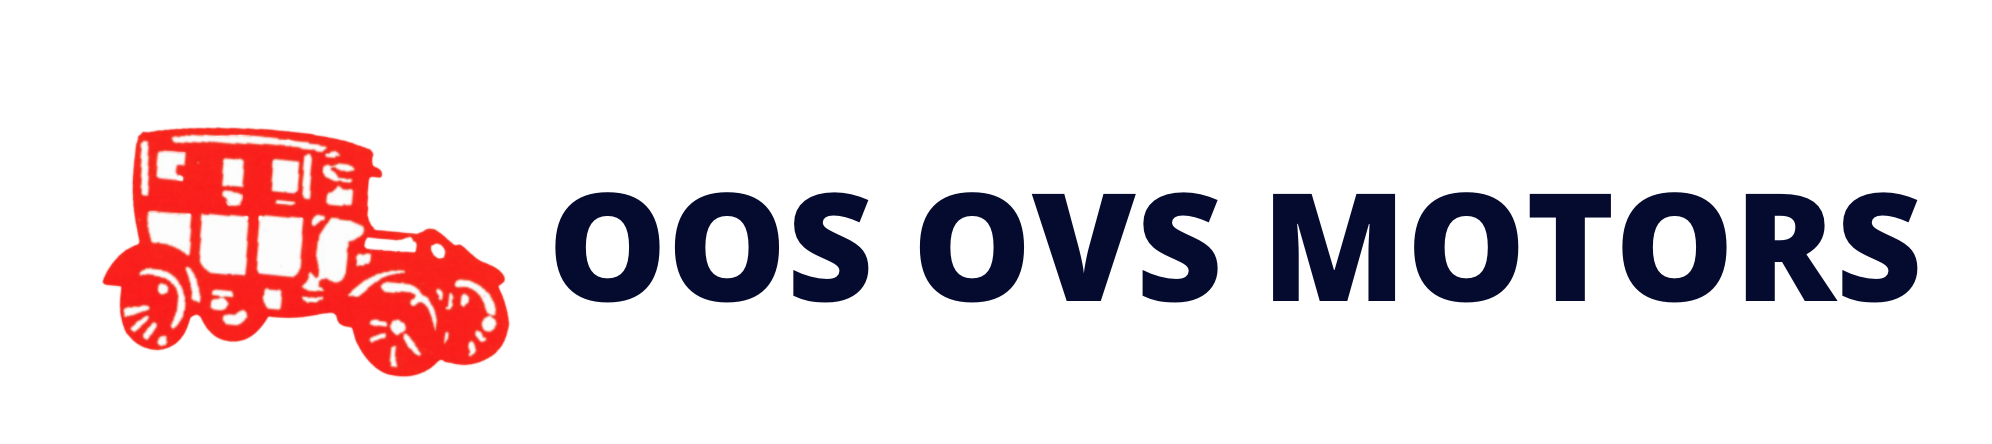 Oos OVS Motors